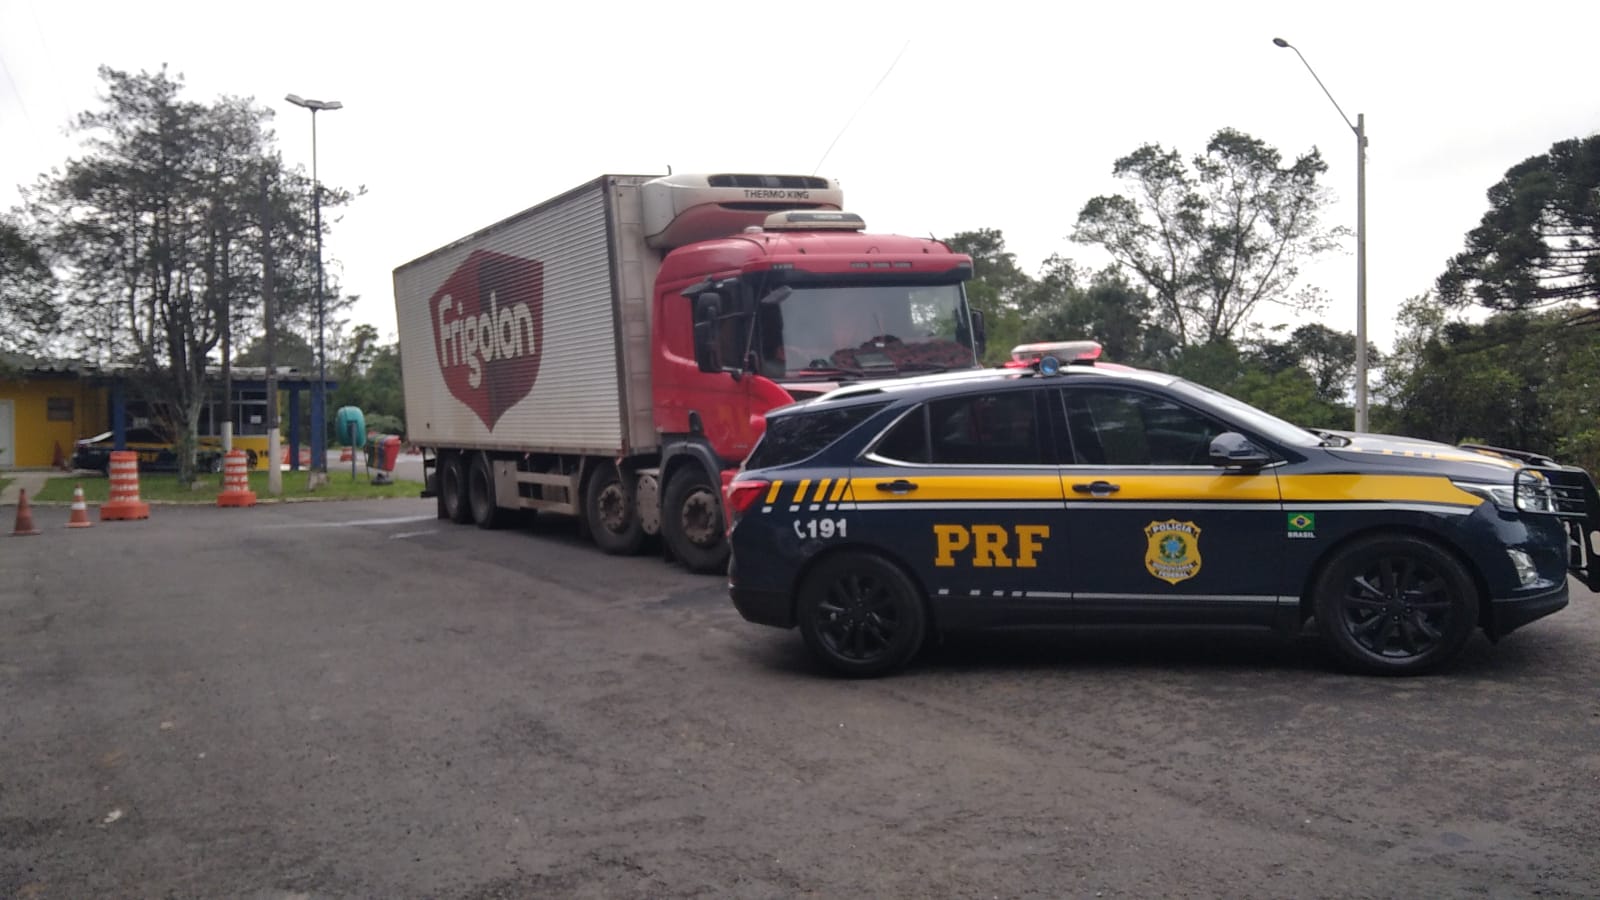 Suspeito rende caminhoneiro, tenta fugir da polícia pulando do veículo em movimento, mas acaba preso, em Ponta Grossa